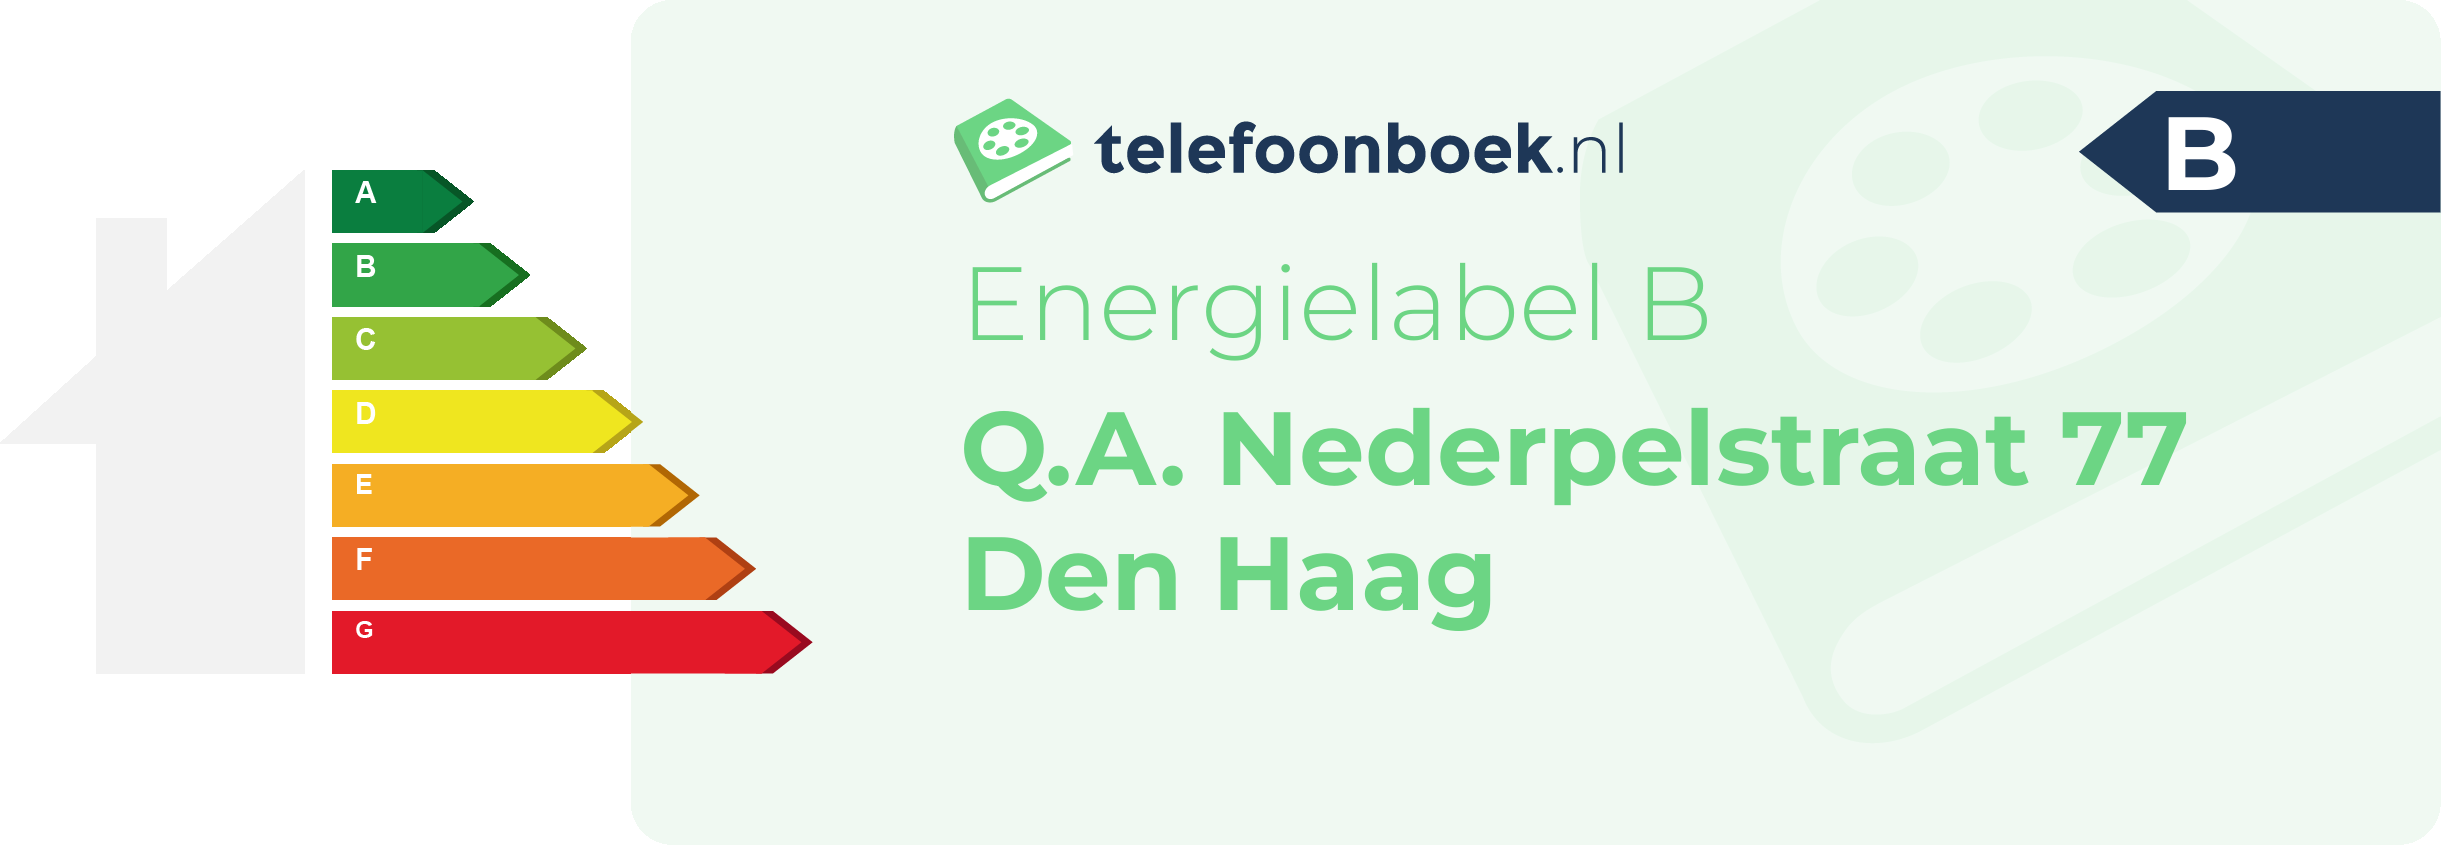 Energielabel Q.A. Nederpelstraat 77 Den Haag